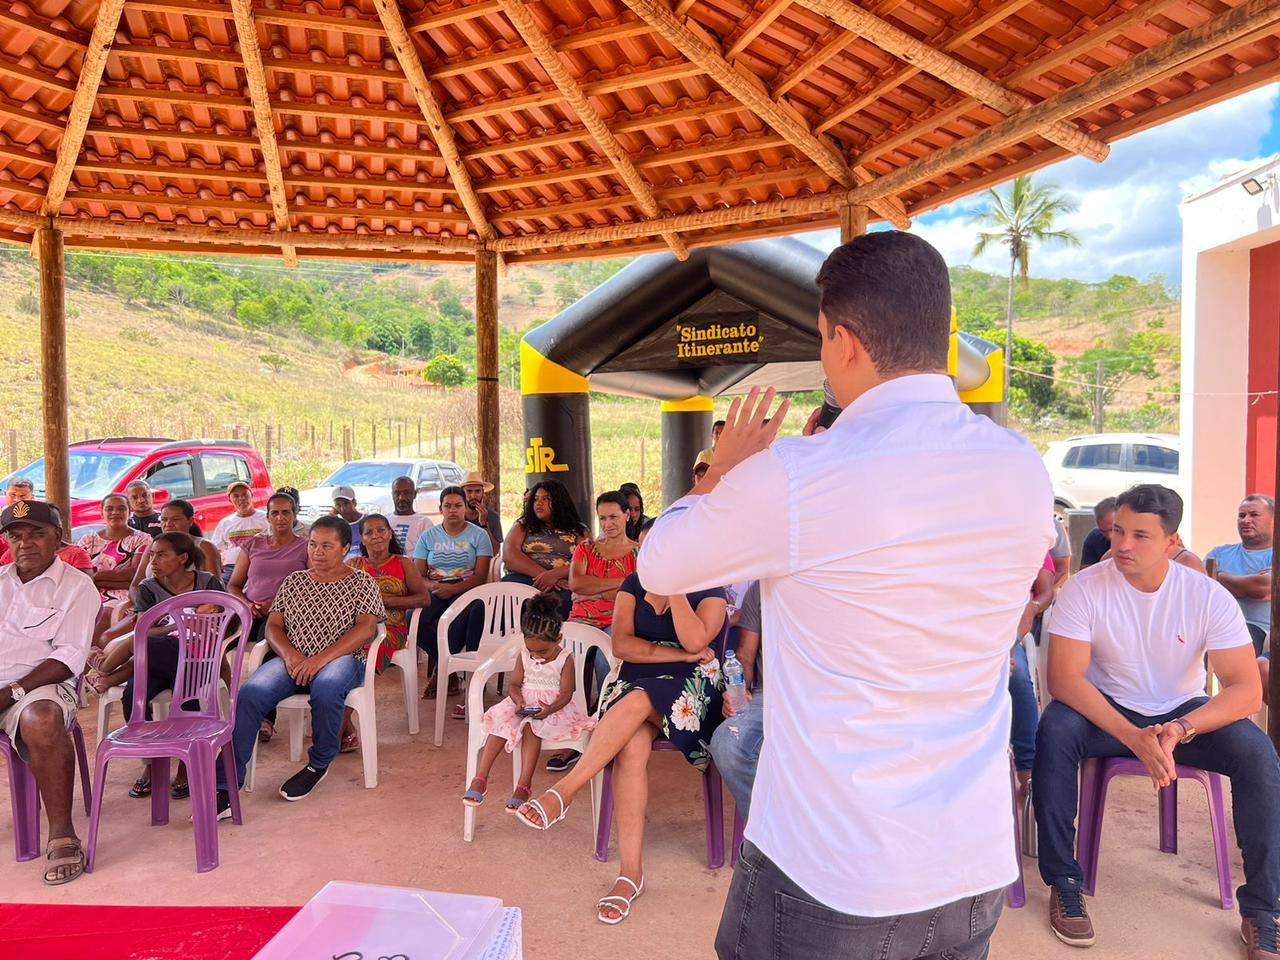 Sindicato Itinerante mobiliza comunidades rurais de Itaipé por seus direitos